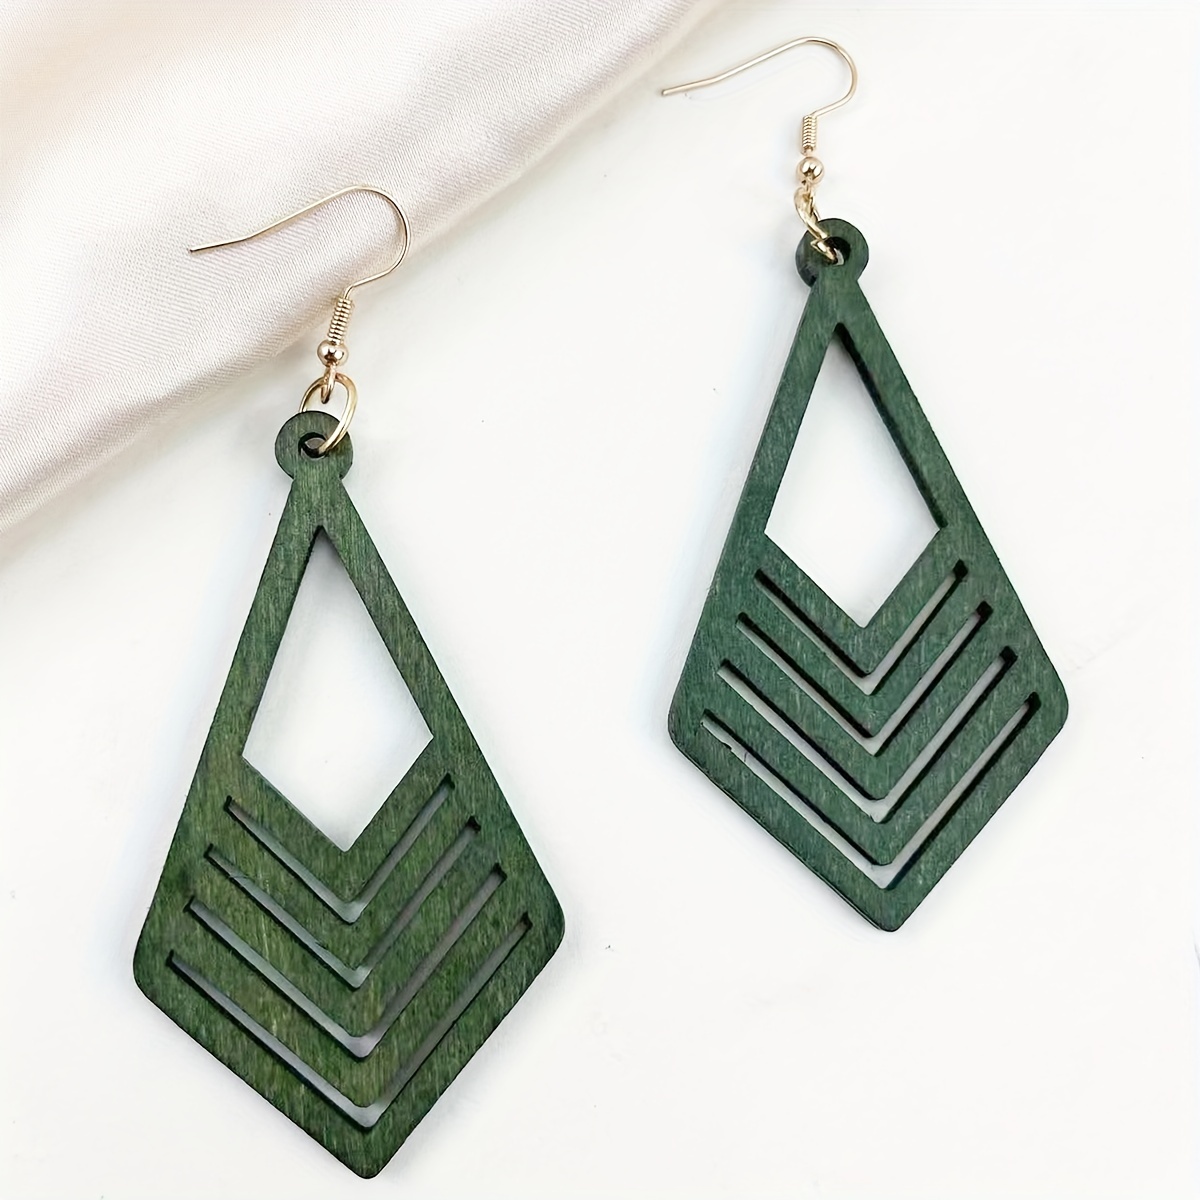 Hexagon Earrings, Geometric Wooden Stud, Mint Green